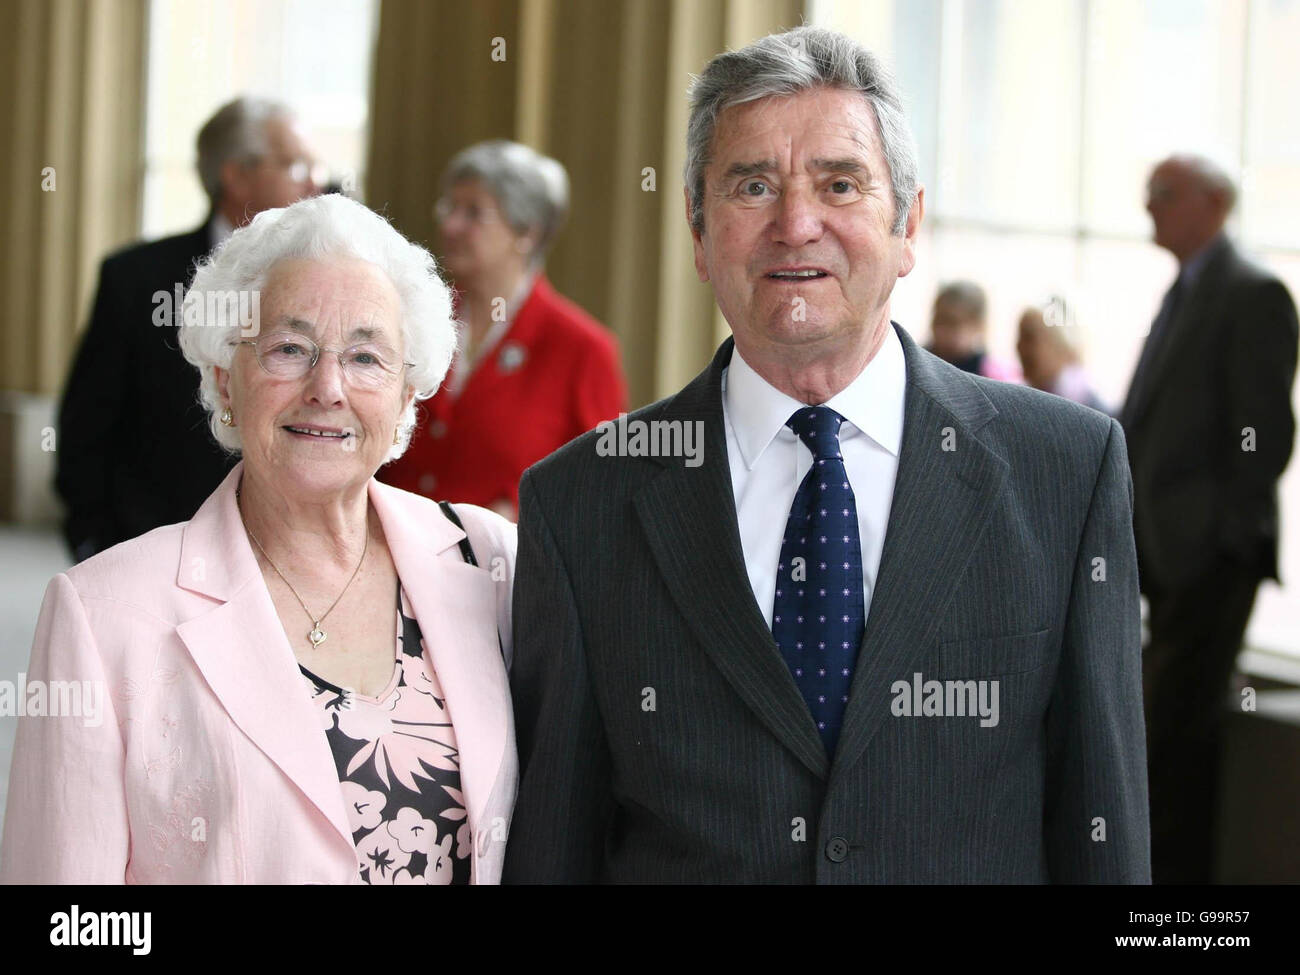 Stanley Bell, con su esposa Betty, de Somerset, sale del Palacio de Buckingham, después de un almuerzo con la Reina Isabel II de Gran Bretaña Foto de stock